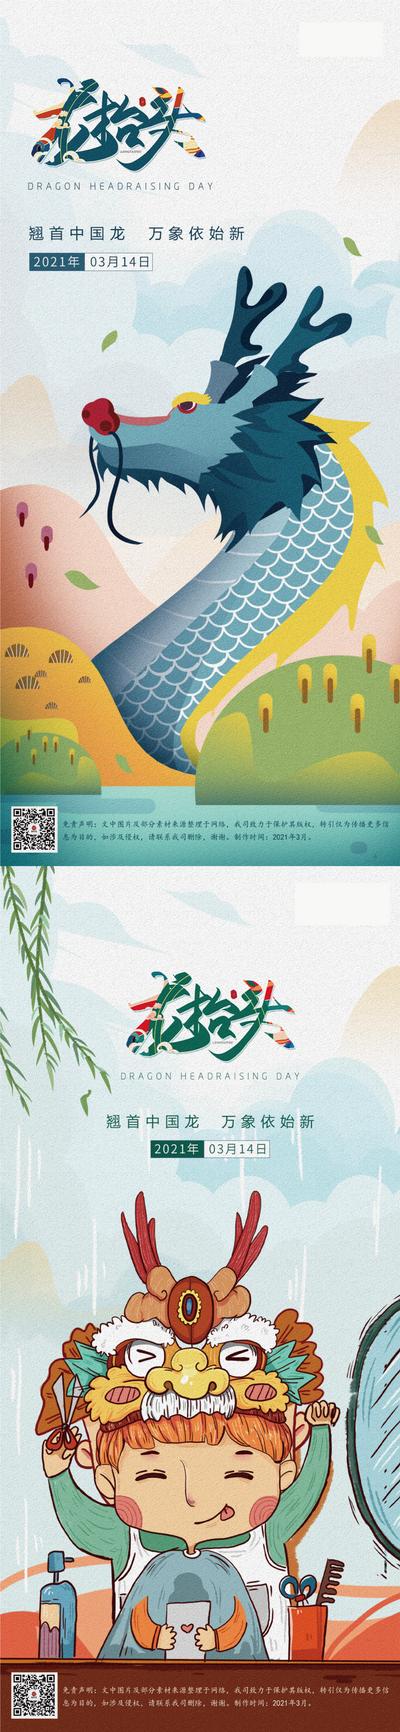 南门网 海报 房地产 中国传统节日 龙抬头 二月二 简约 插画 系列